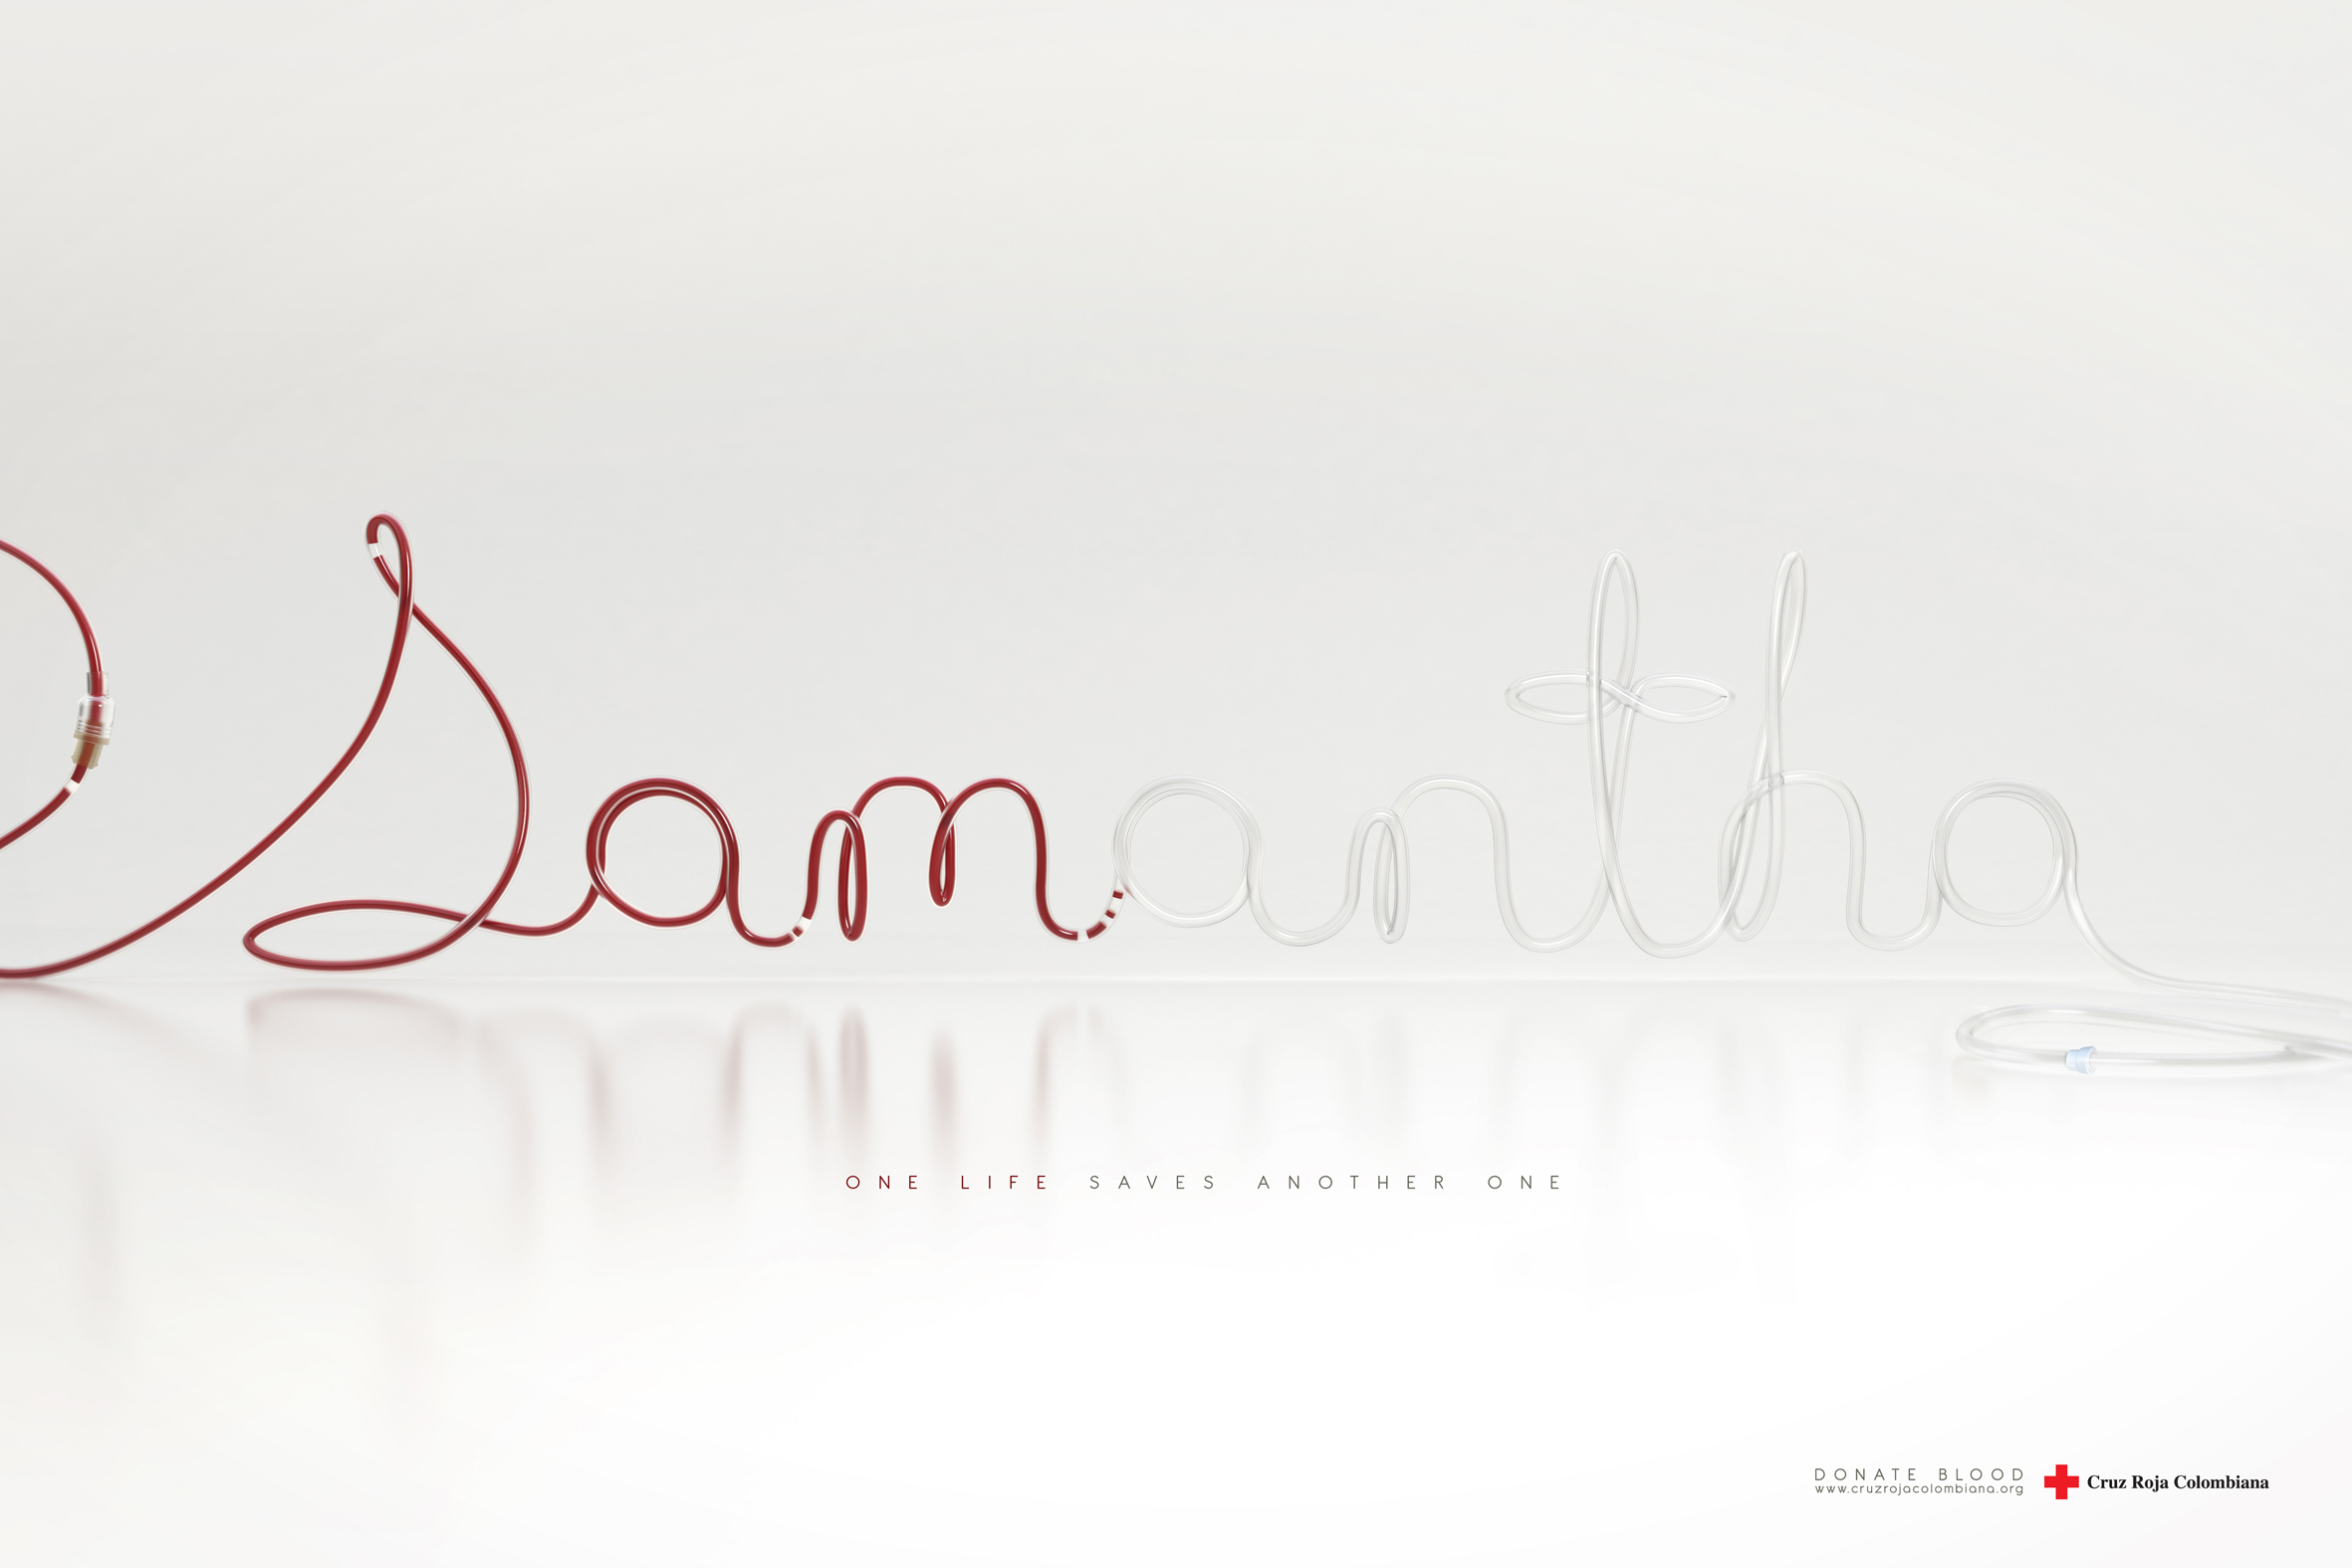 SAM-ANTHA.jpg